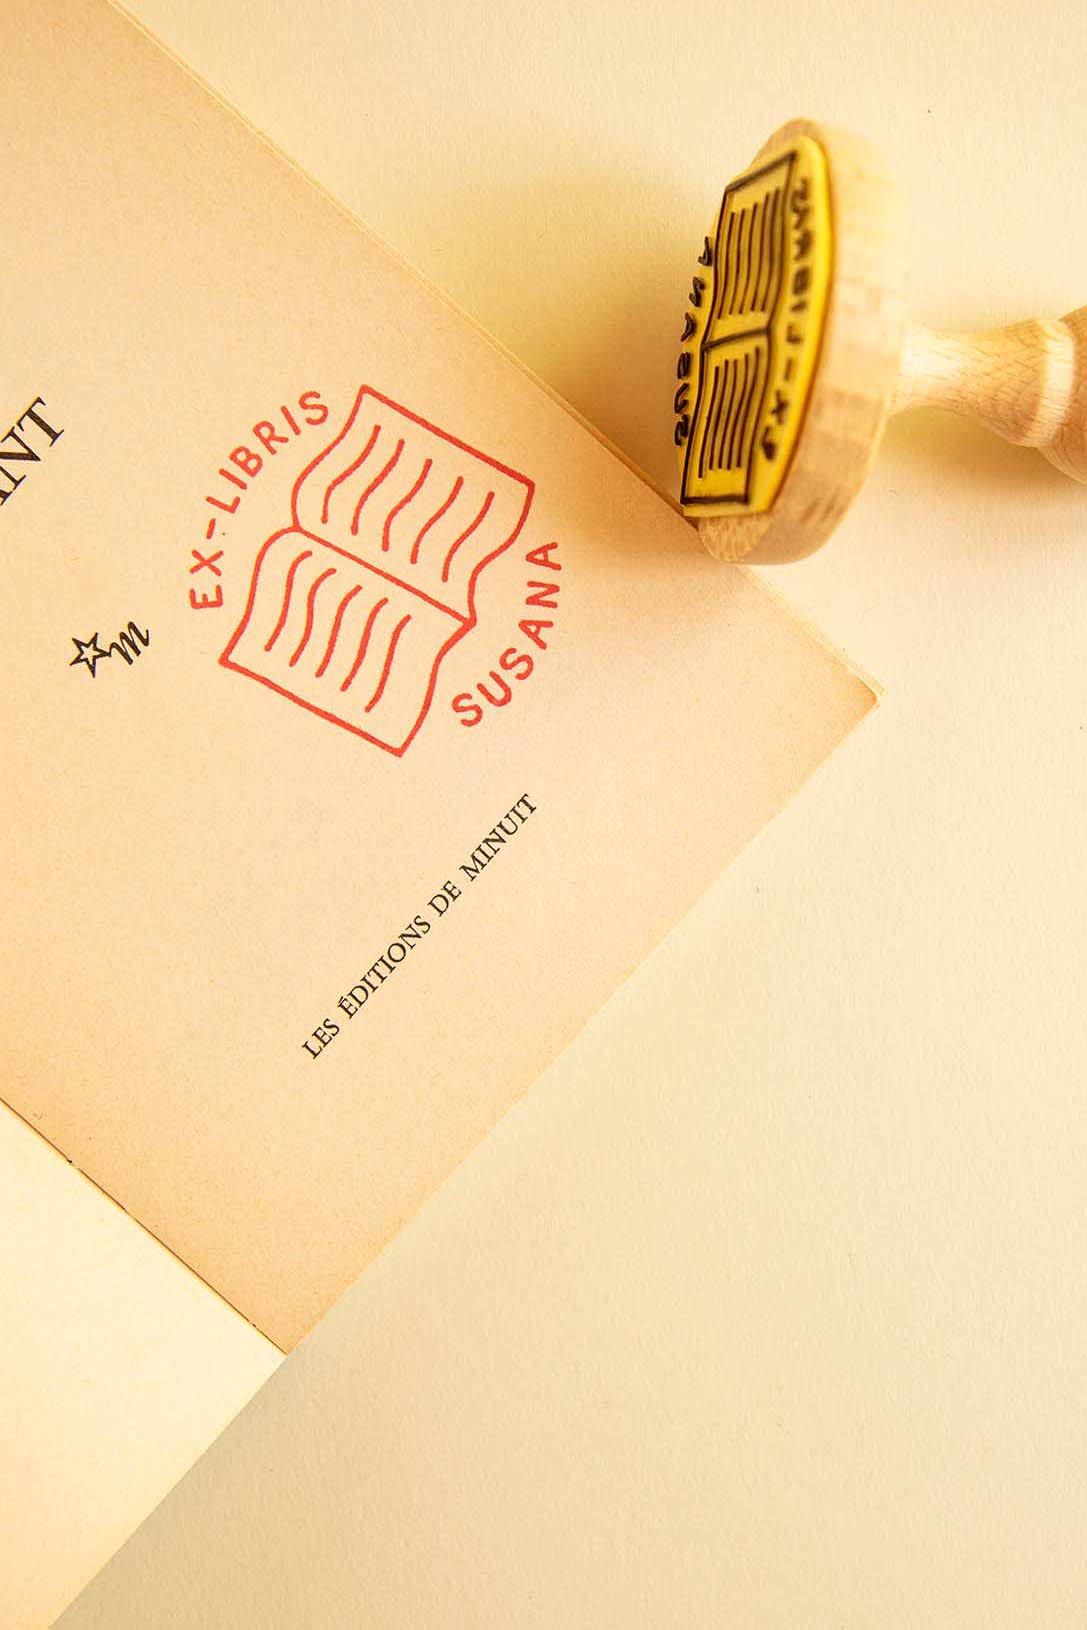 Portadilla de libro estampada con sello exlibris de un libro abierto